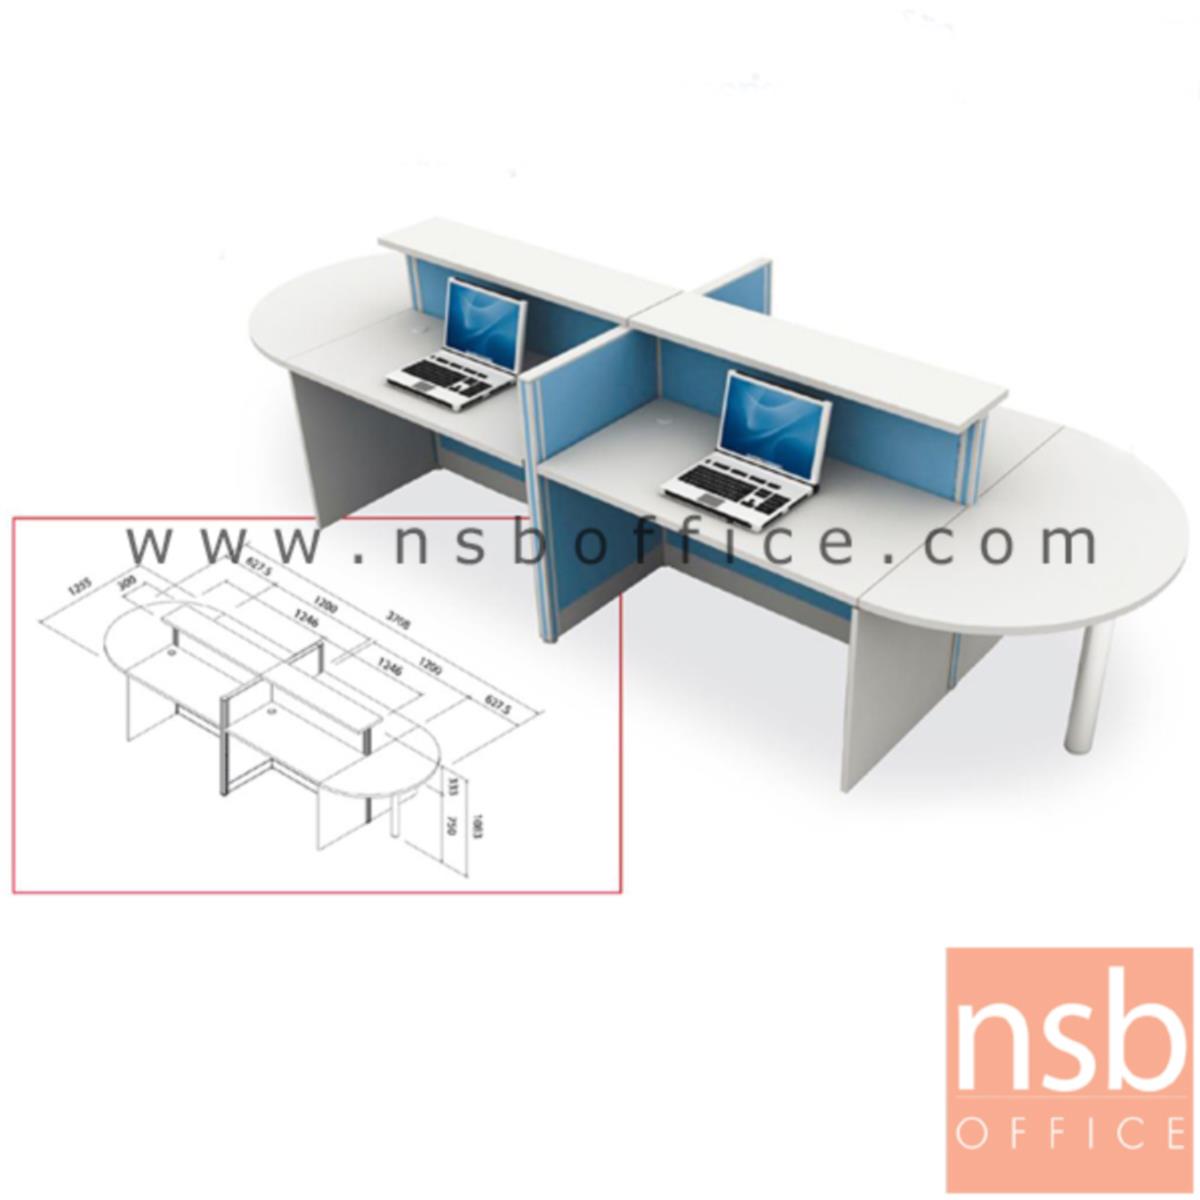 A04A048:ชุดโต๊ะทำงานกลุ่ม 4 ที่นั่ง    พร้อม partitionและโต๊ะวางของครึ่งวงกลม